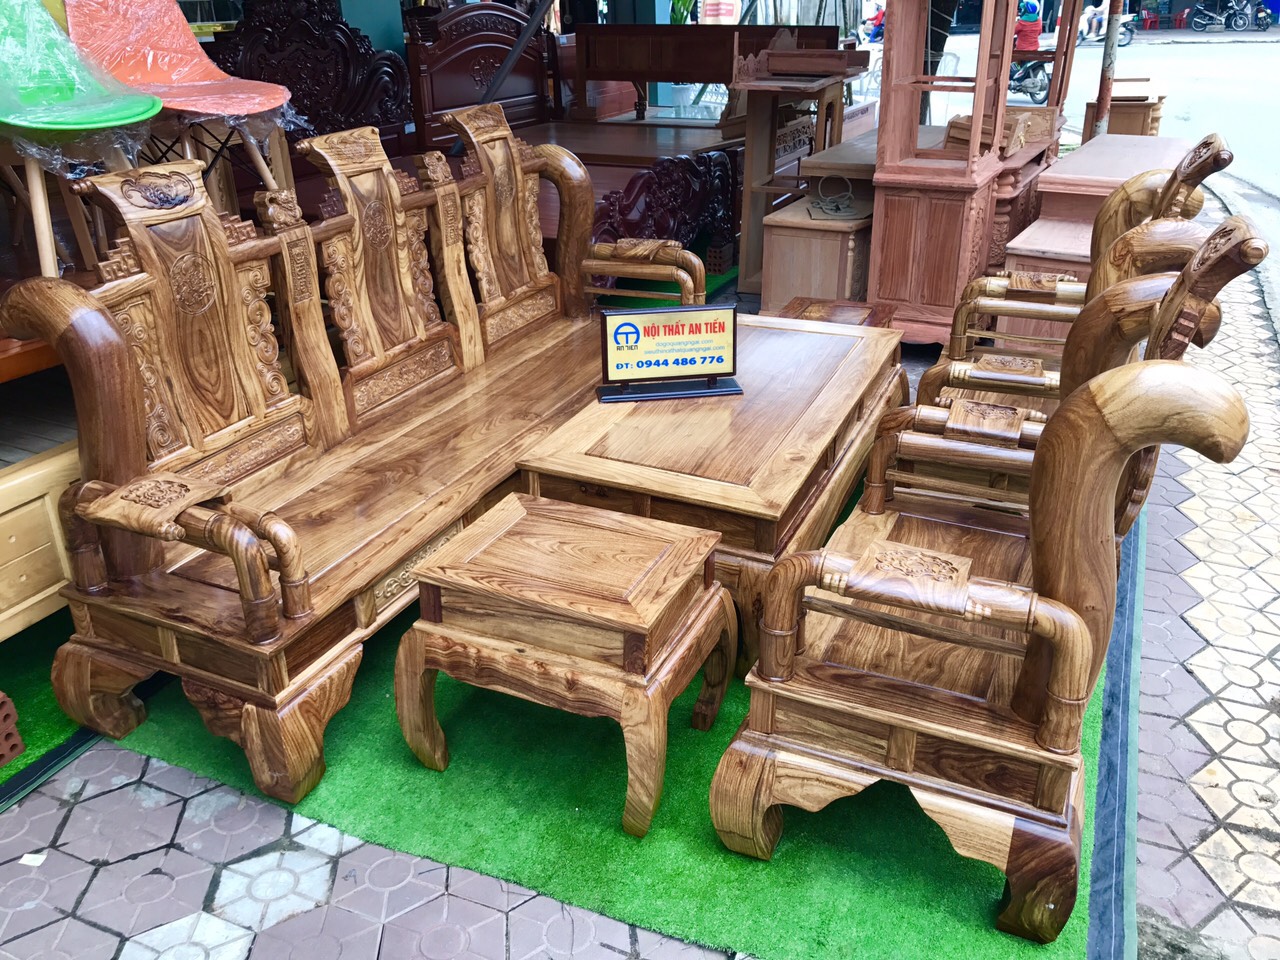 Nếu bạn yêu thích nội thất gỗ, hãy xem qua hình ảnh của chúng tôi tại Quảng Ngãi. Chúng tôi sử dụng gỗ Hương vân đẹp và chất lượng để tạo ra những không gian sống tuyệt vời.